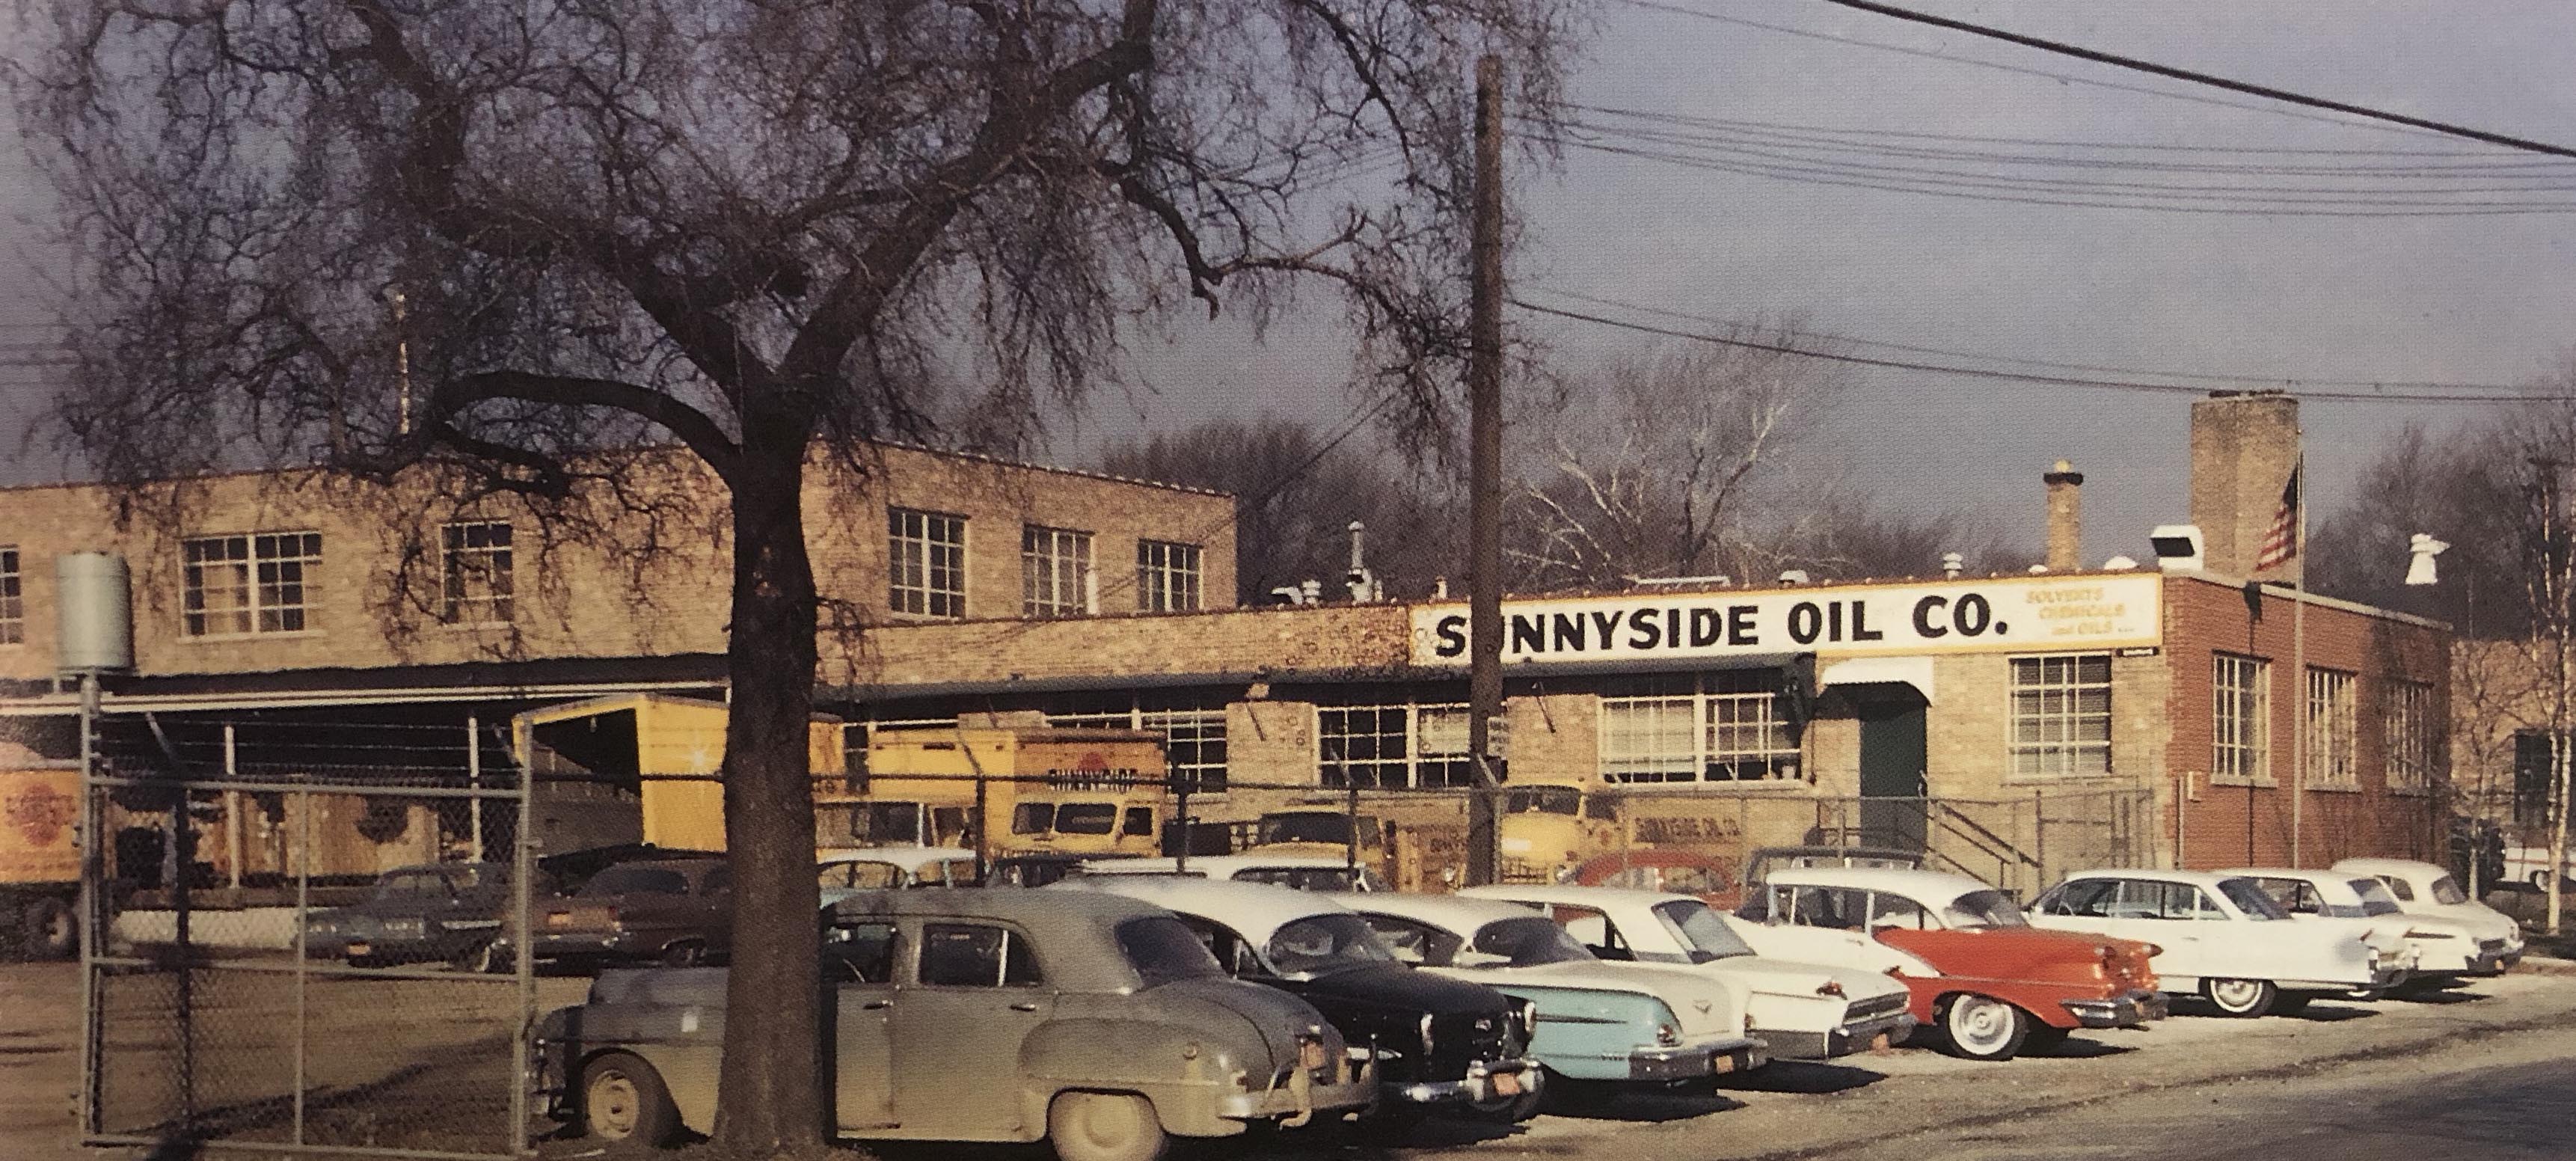 Sunnyside Oil Company building.